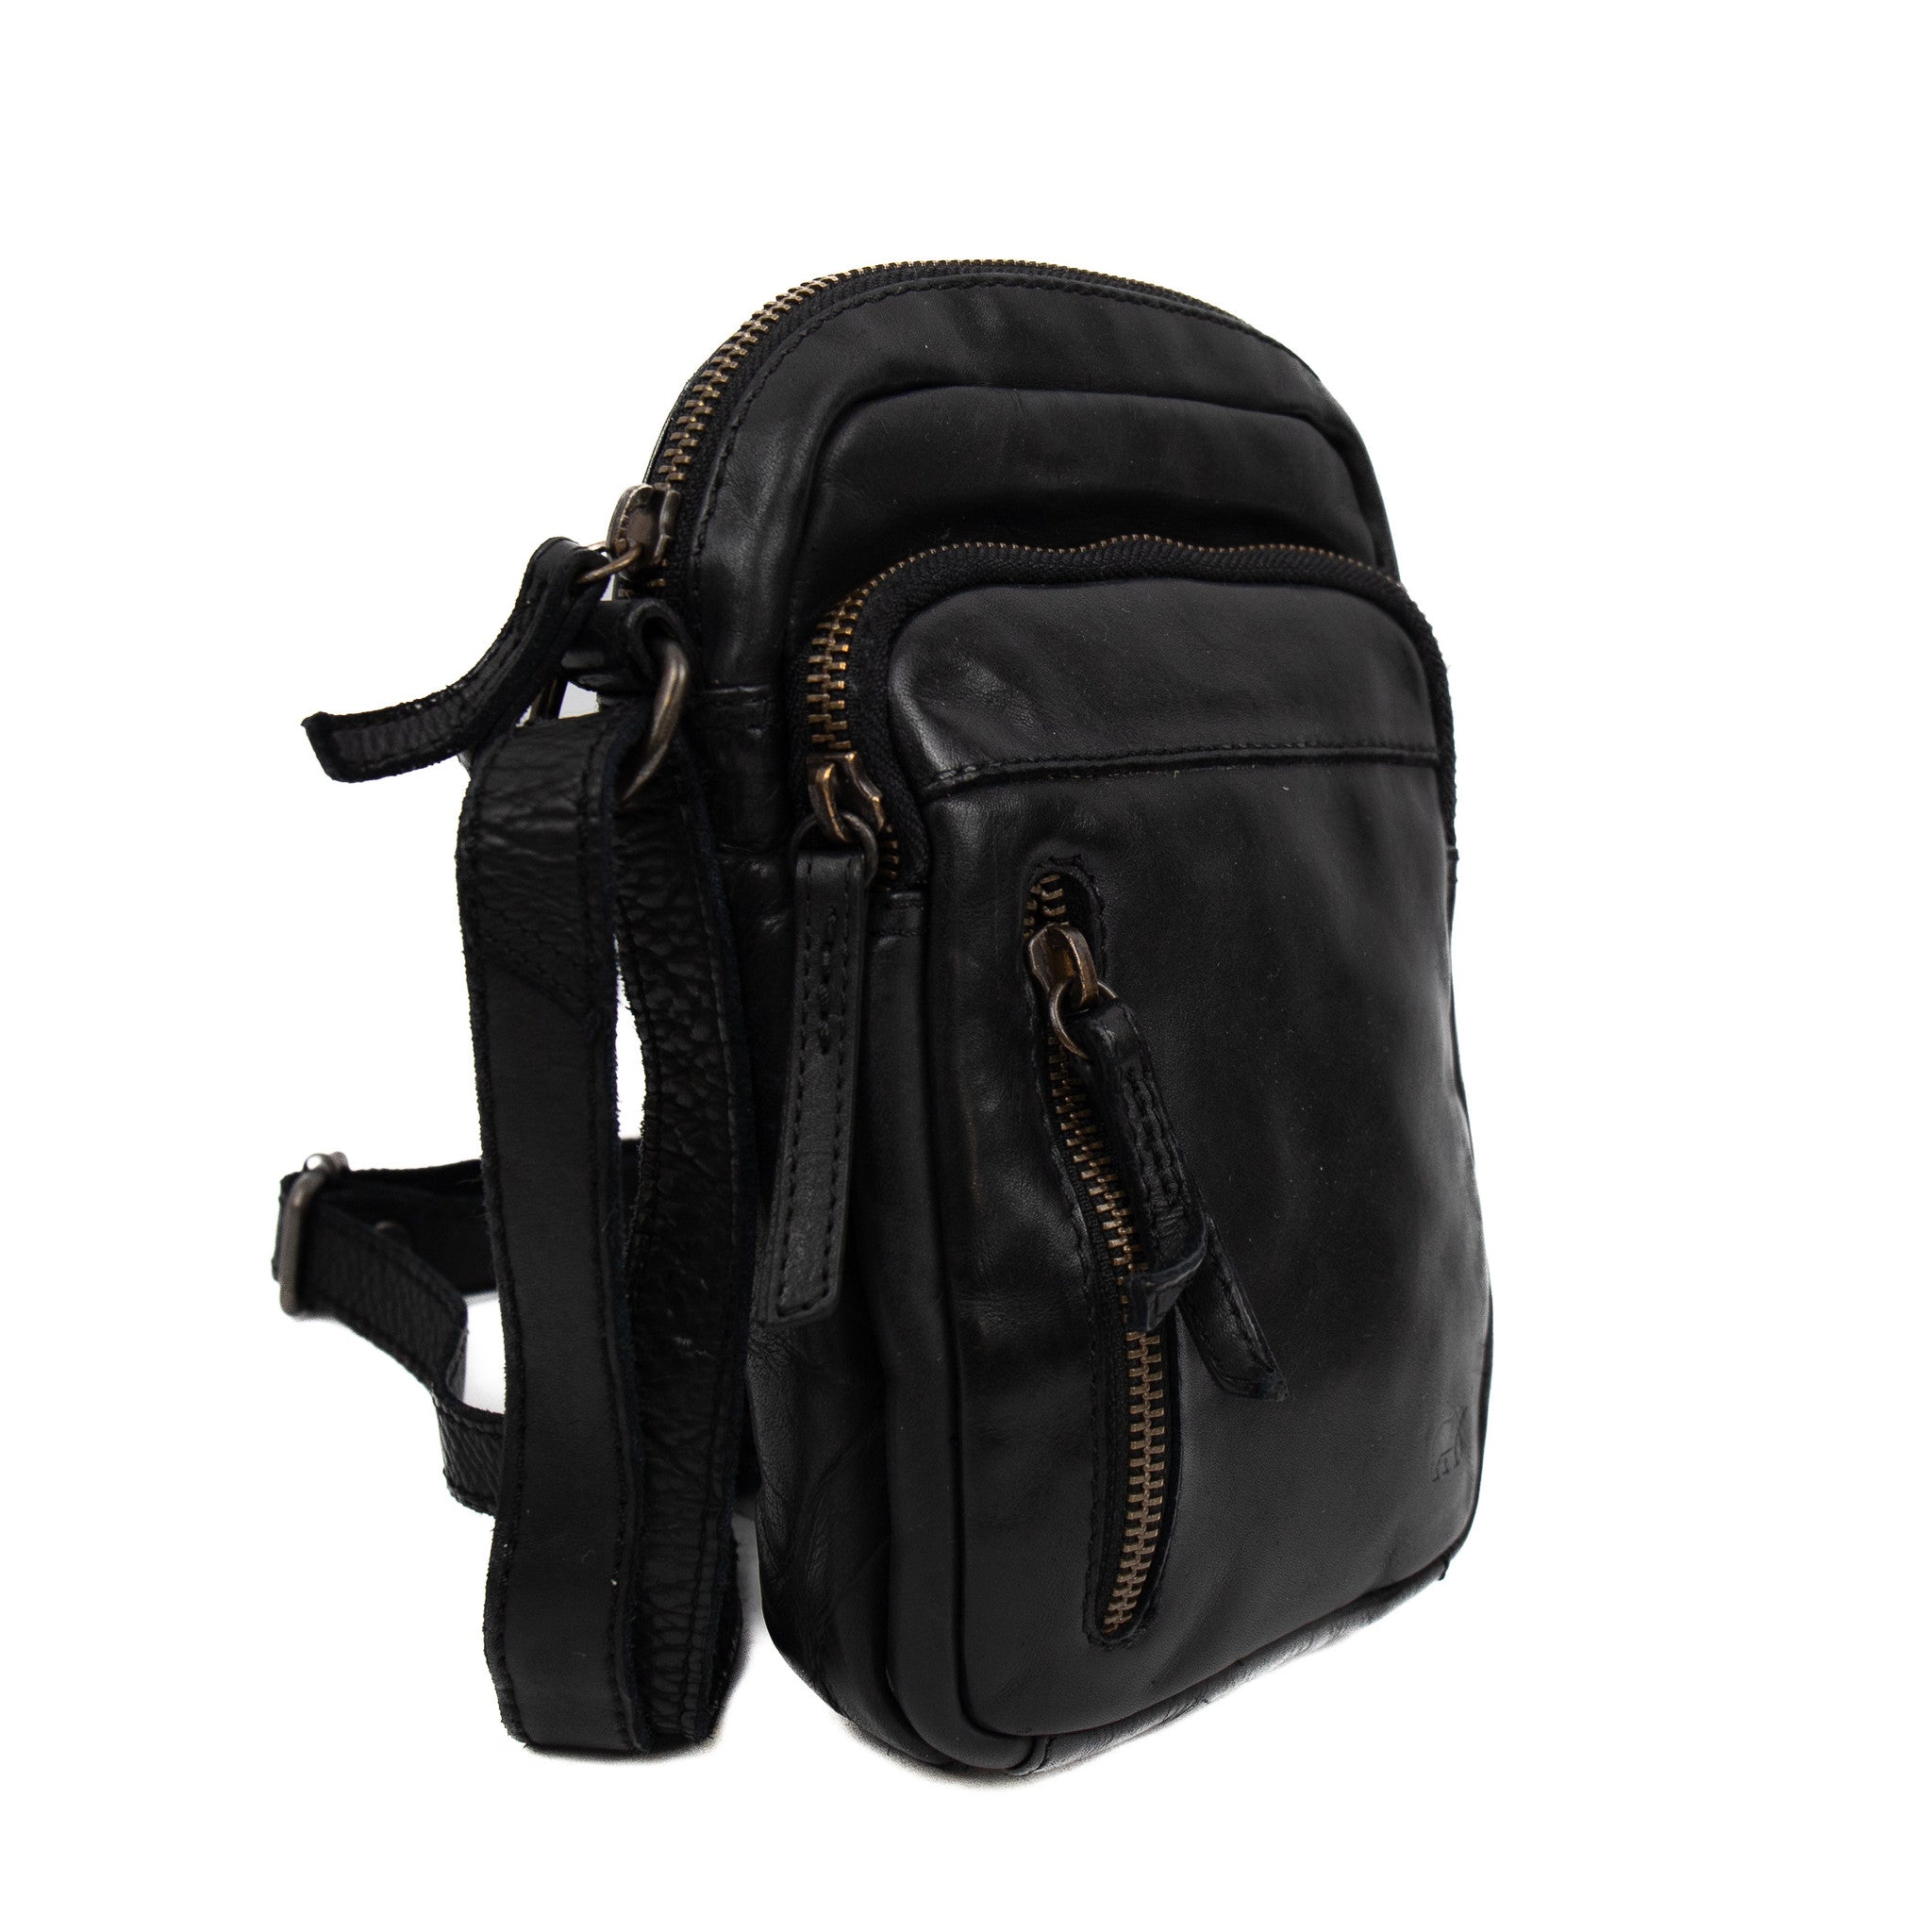 Shoulder bag 'Karin' black - CL 5243